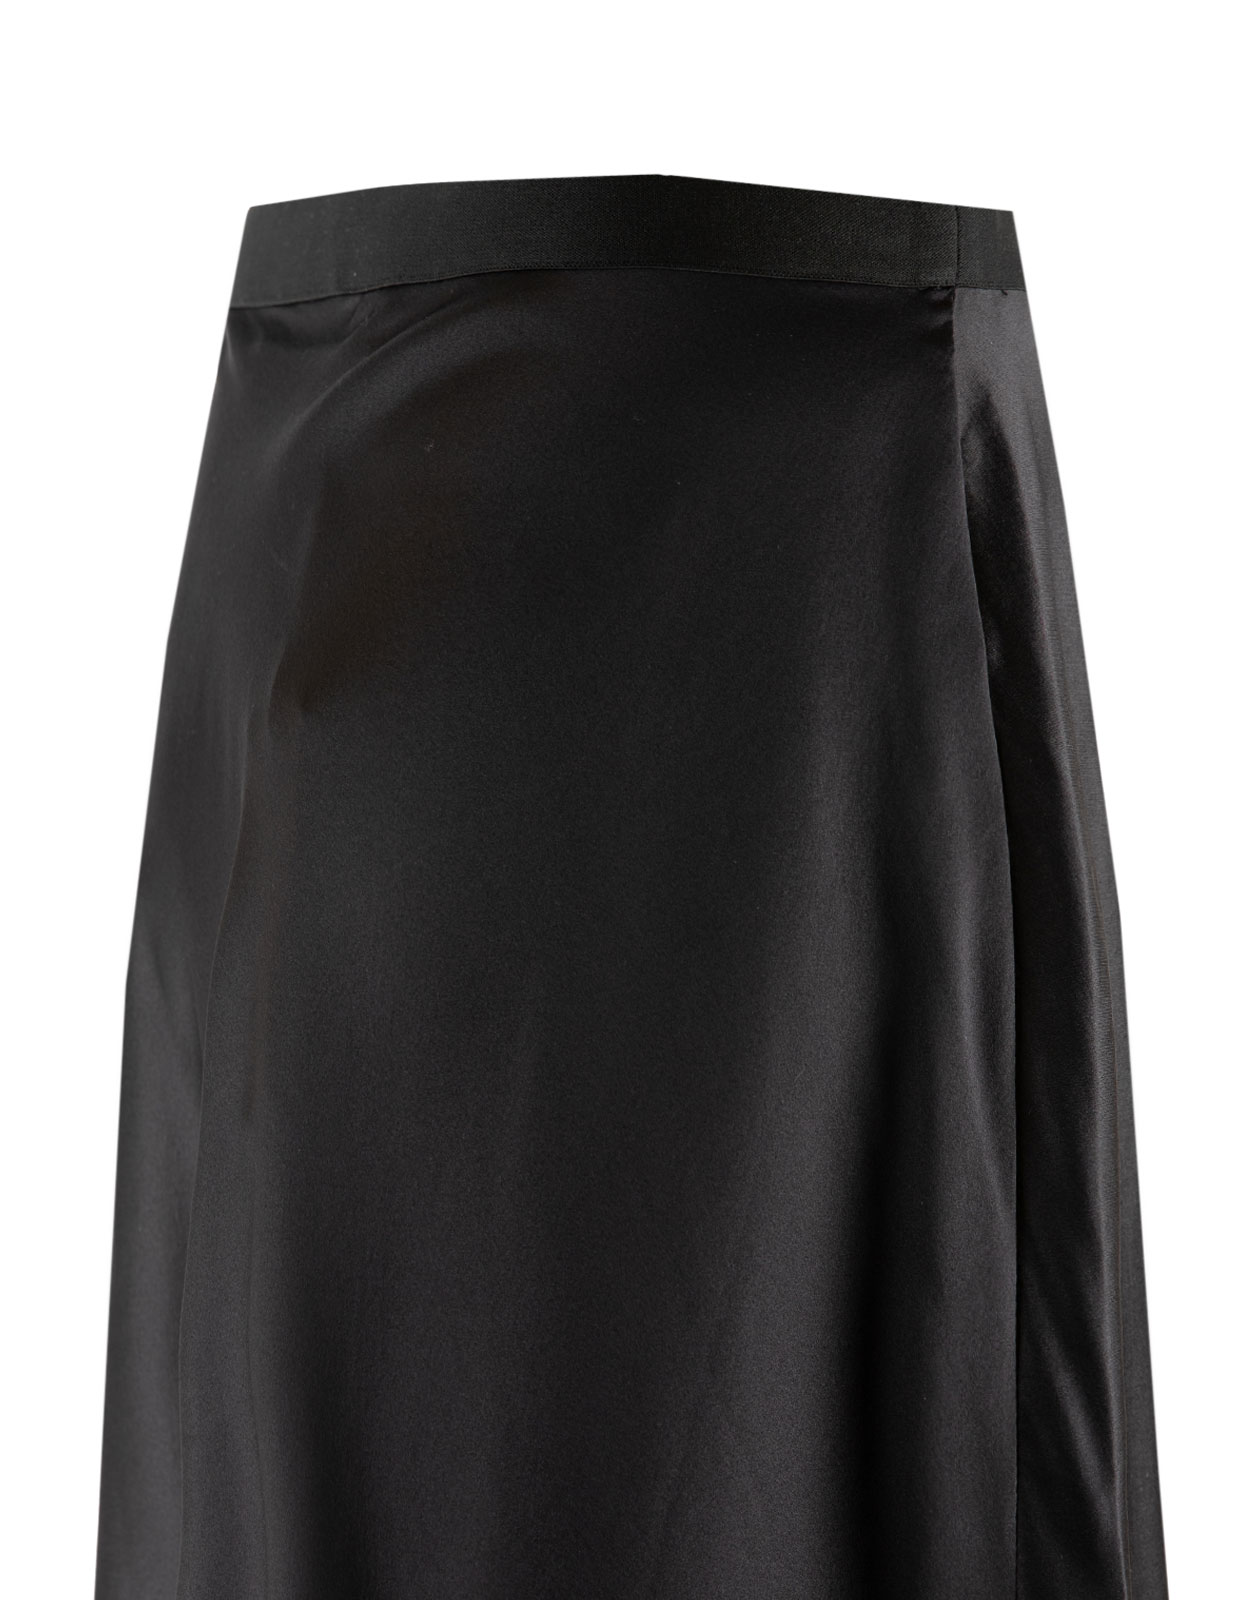 Hana Short Skirt Black